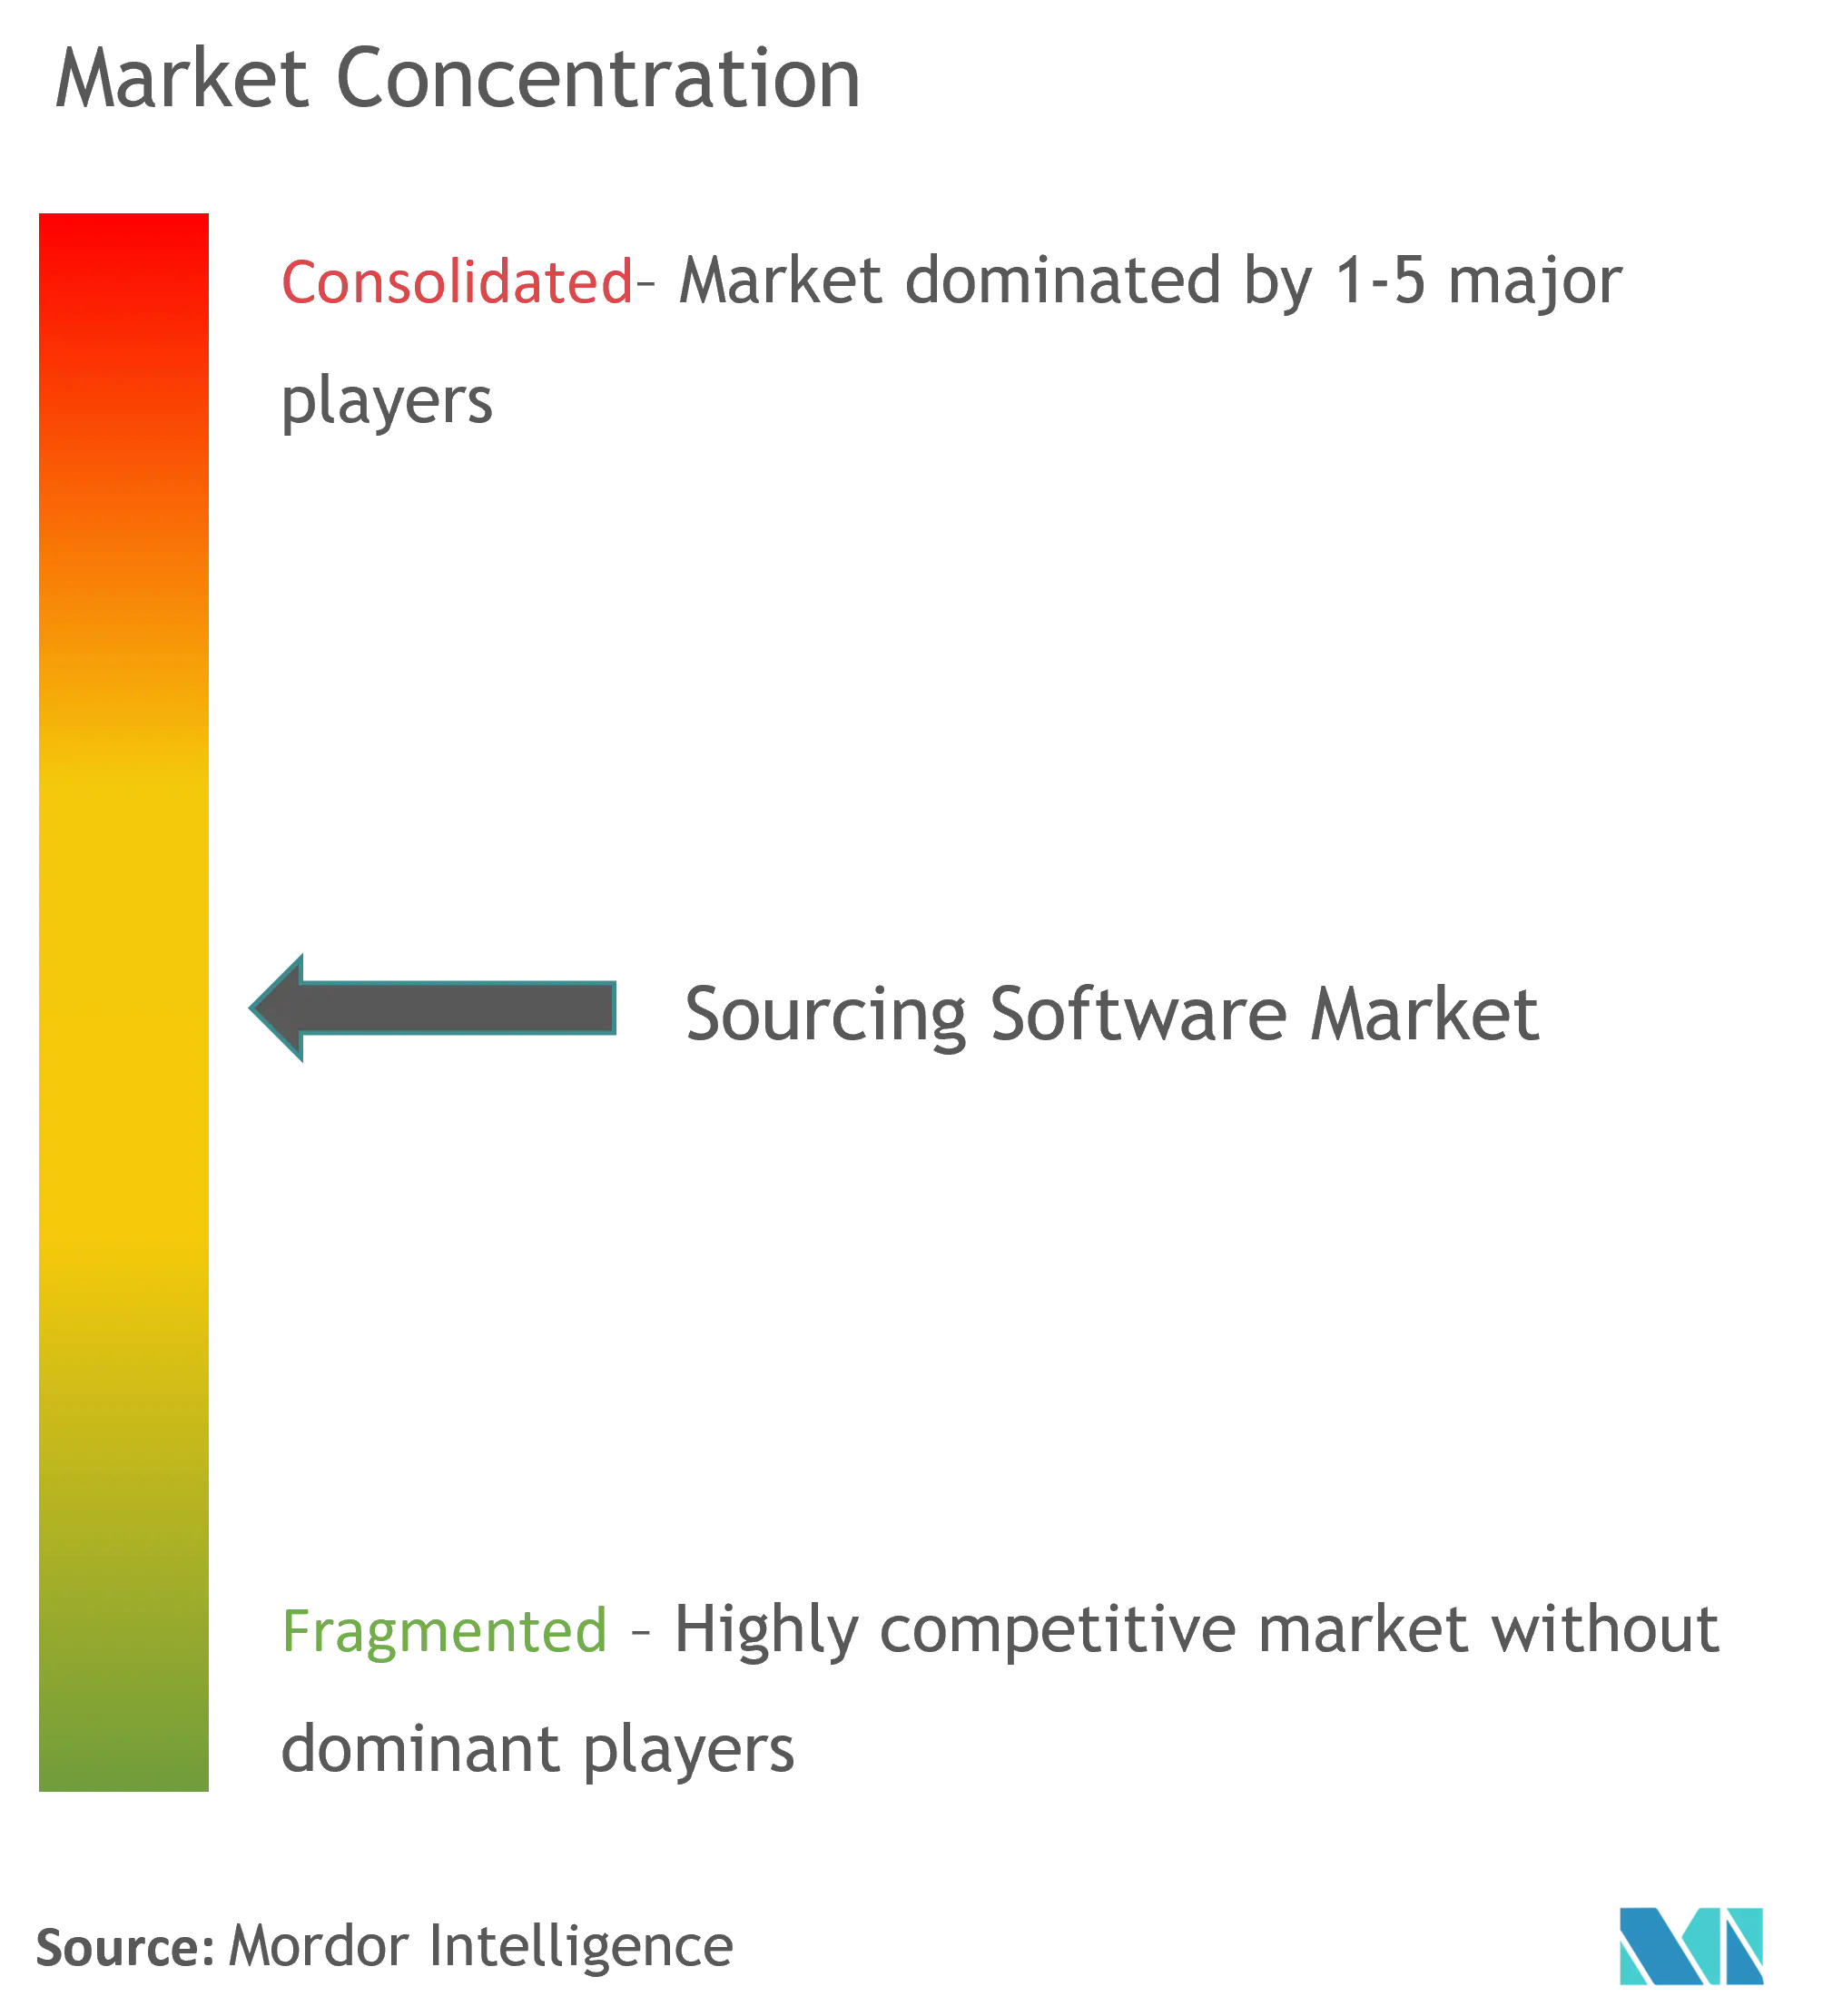 Sourcing Software Market - Market Concentration.png